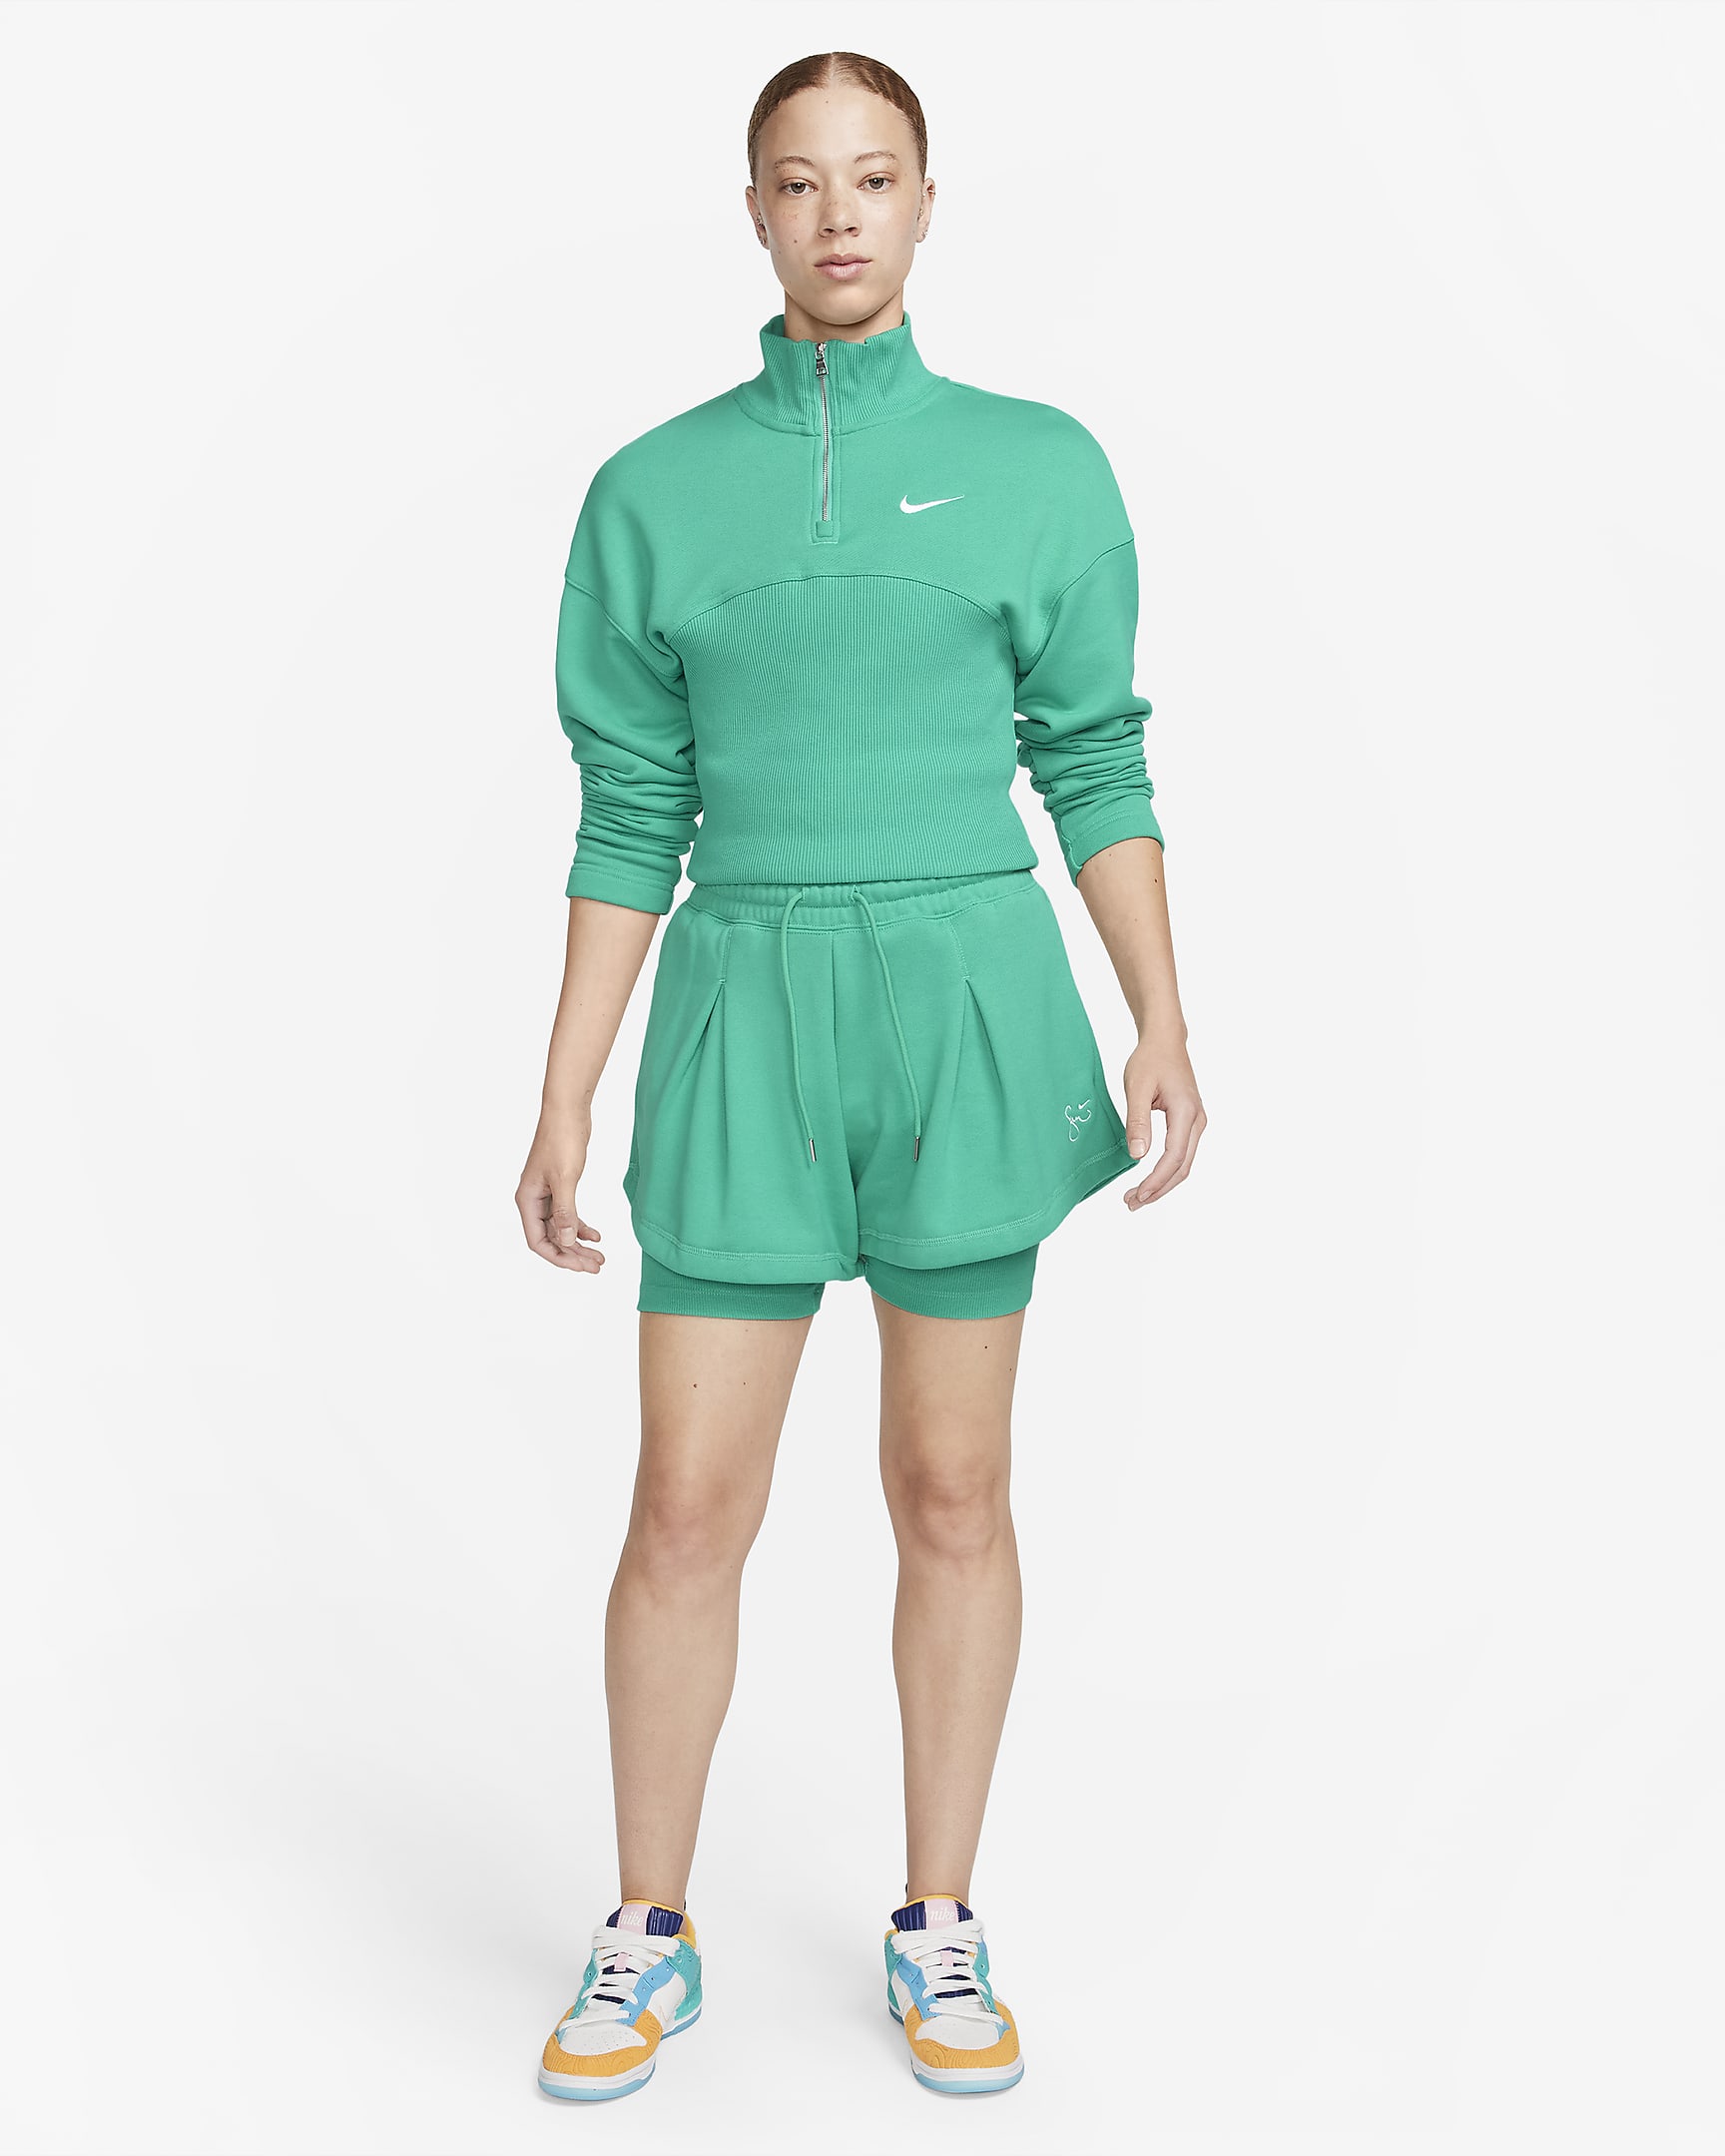 Serena Williams Design Crew Women's 1/4-Zip Fleece Top. Nike.com